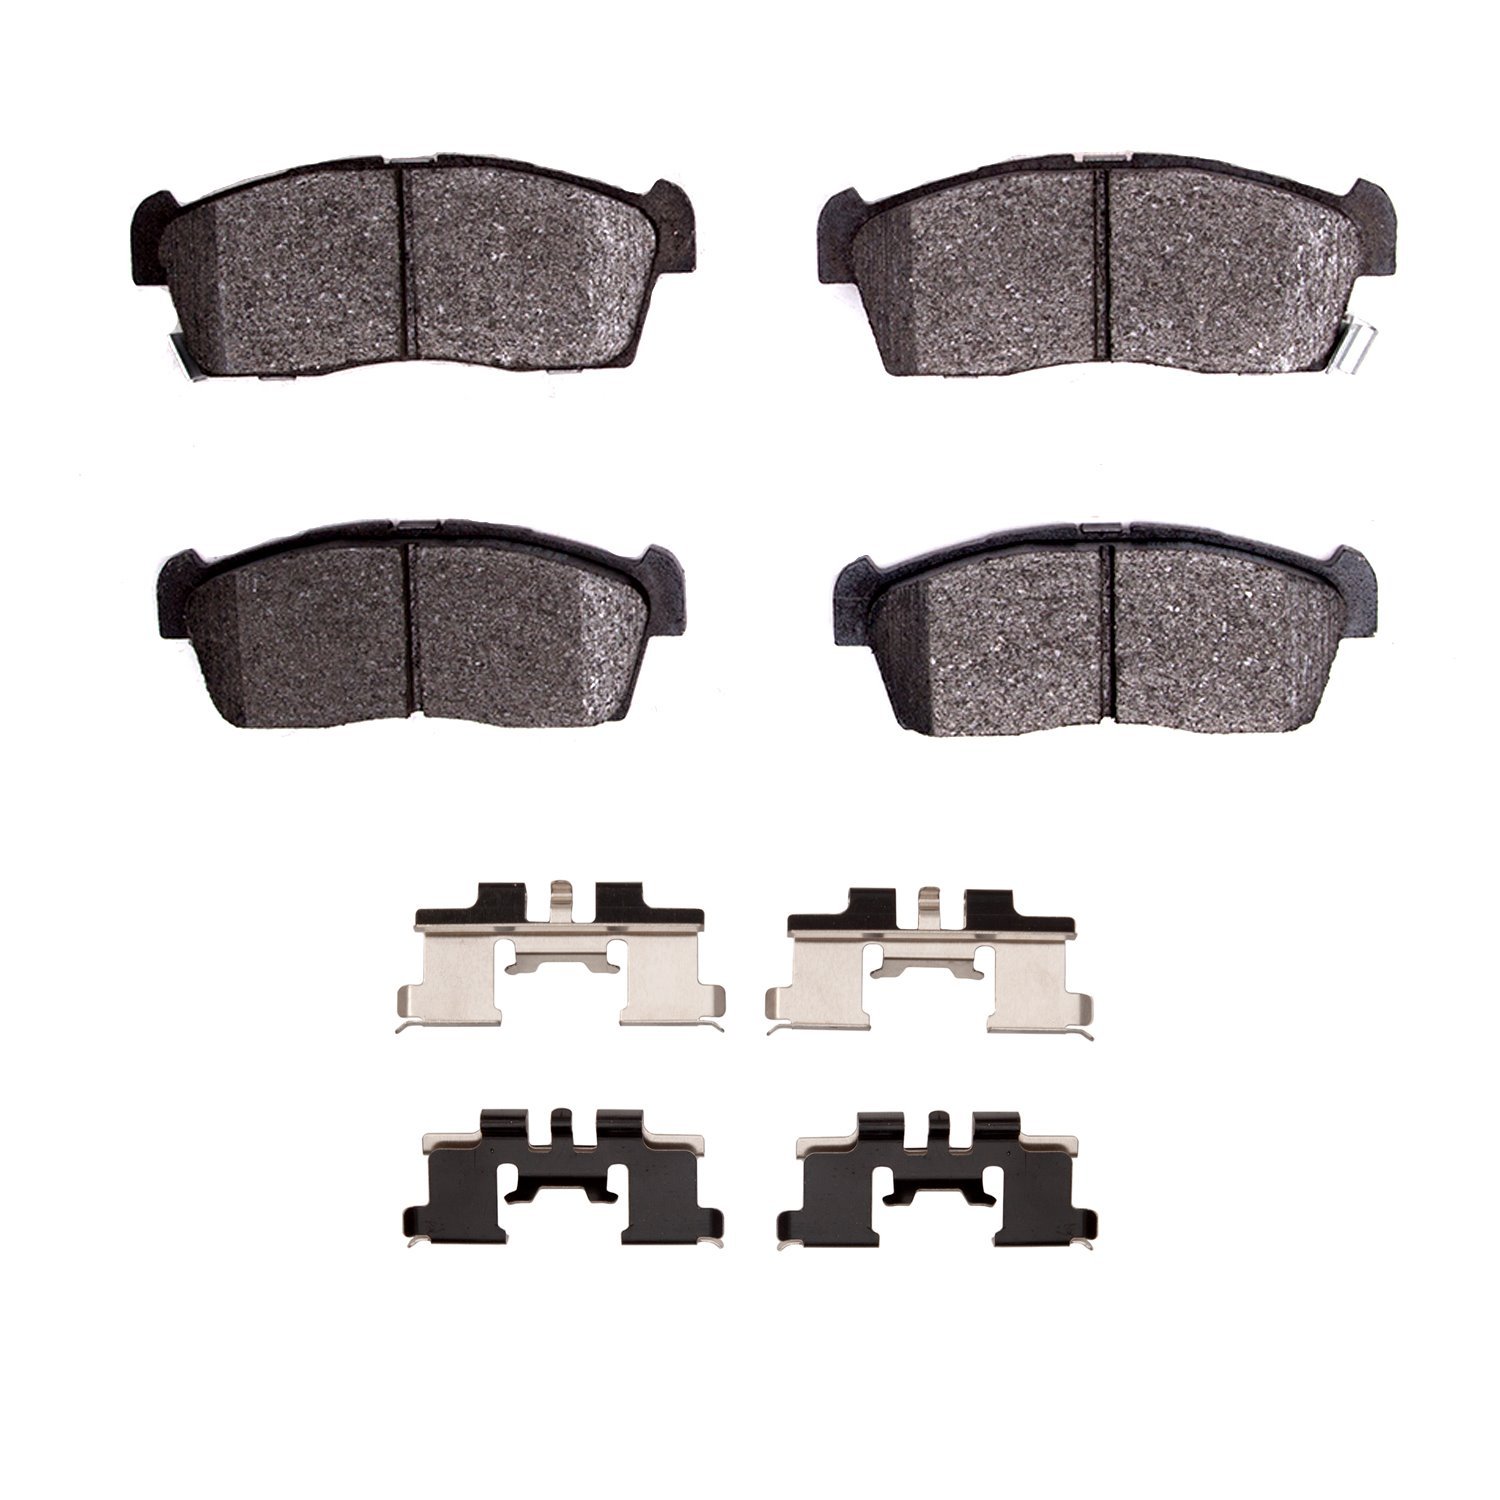 Ceramic Brake Pads & Hardware Kit, 2012-2017 Mitsubishi, Position: Front